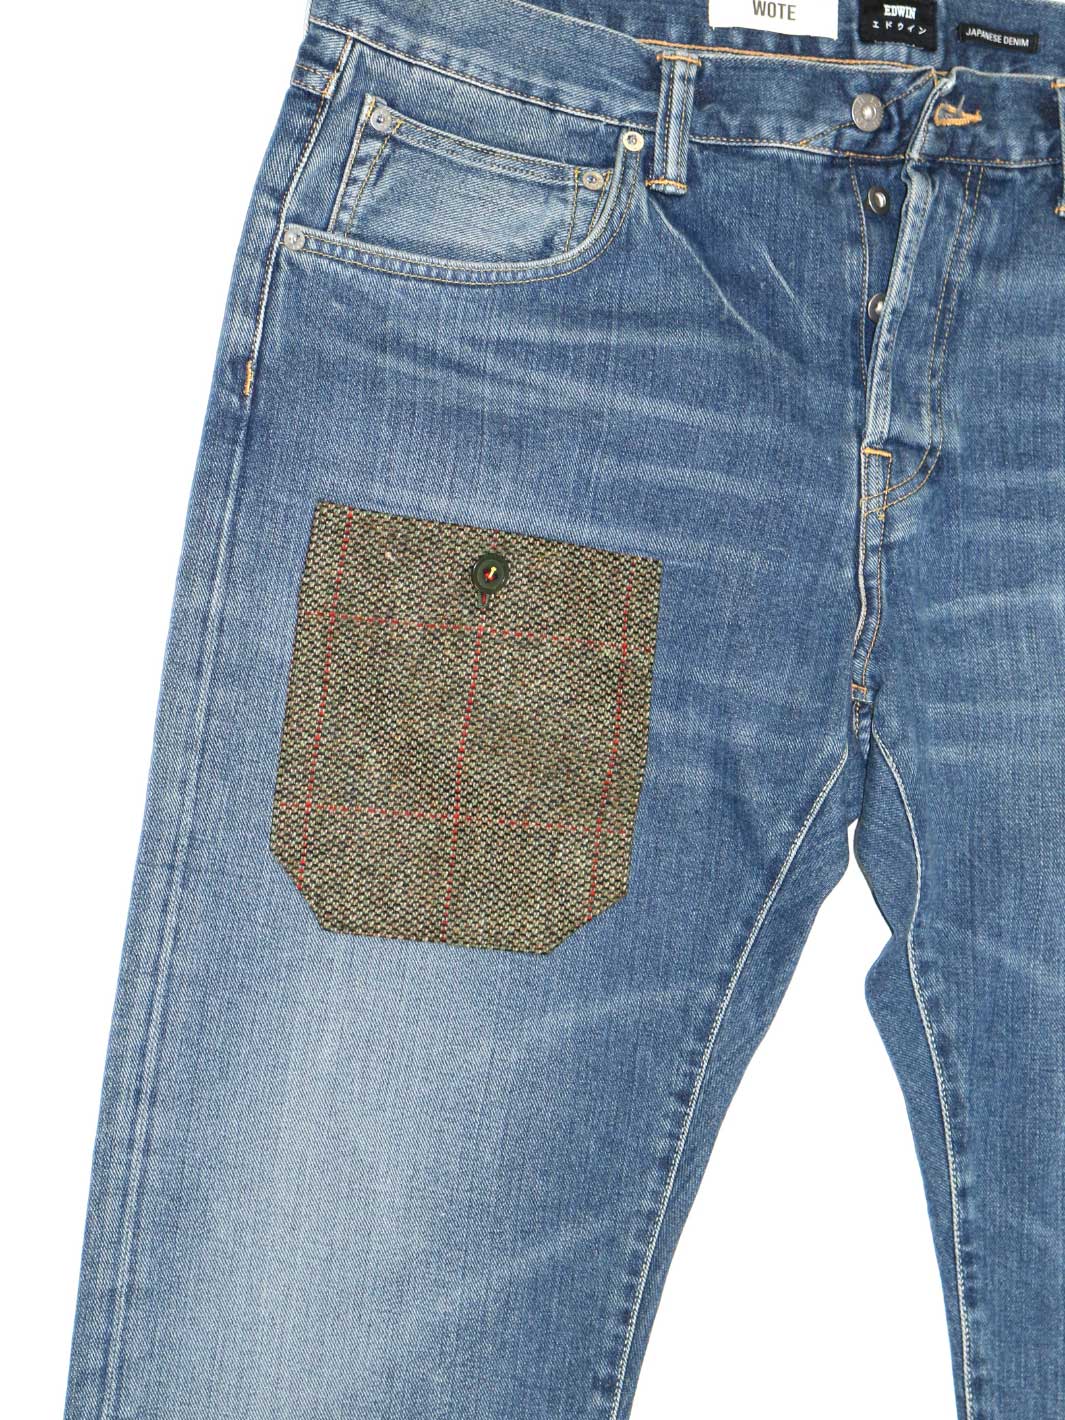 Herren upcylcling Jeans mittelblaue Waschung Größe 38/32 mit aufgesetzter Tasche in olive farbenen Tweed Material mit Knopf verschliessbar